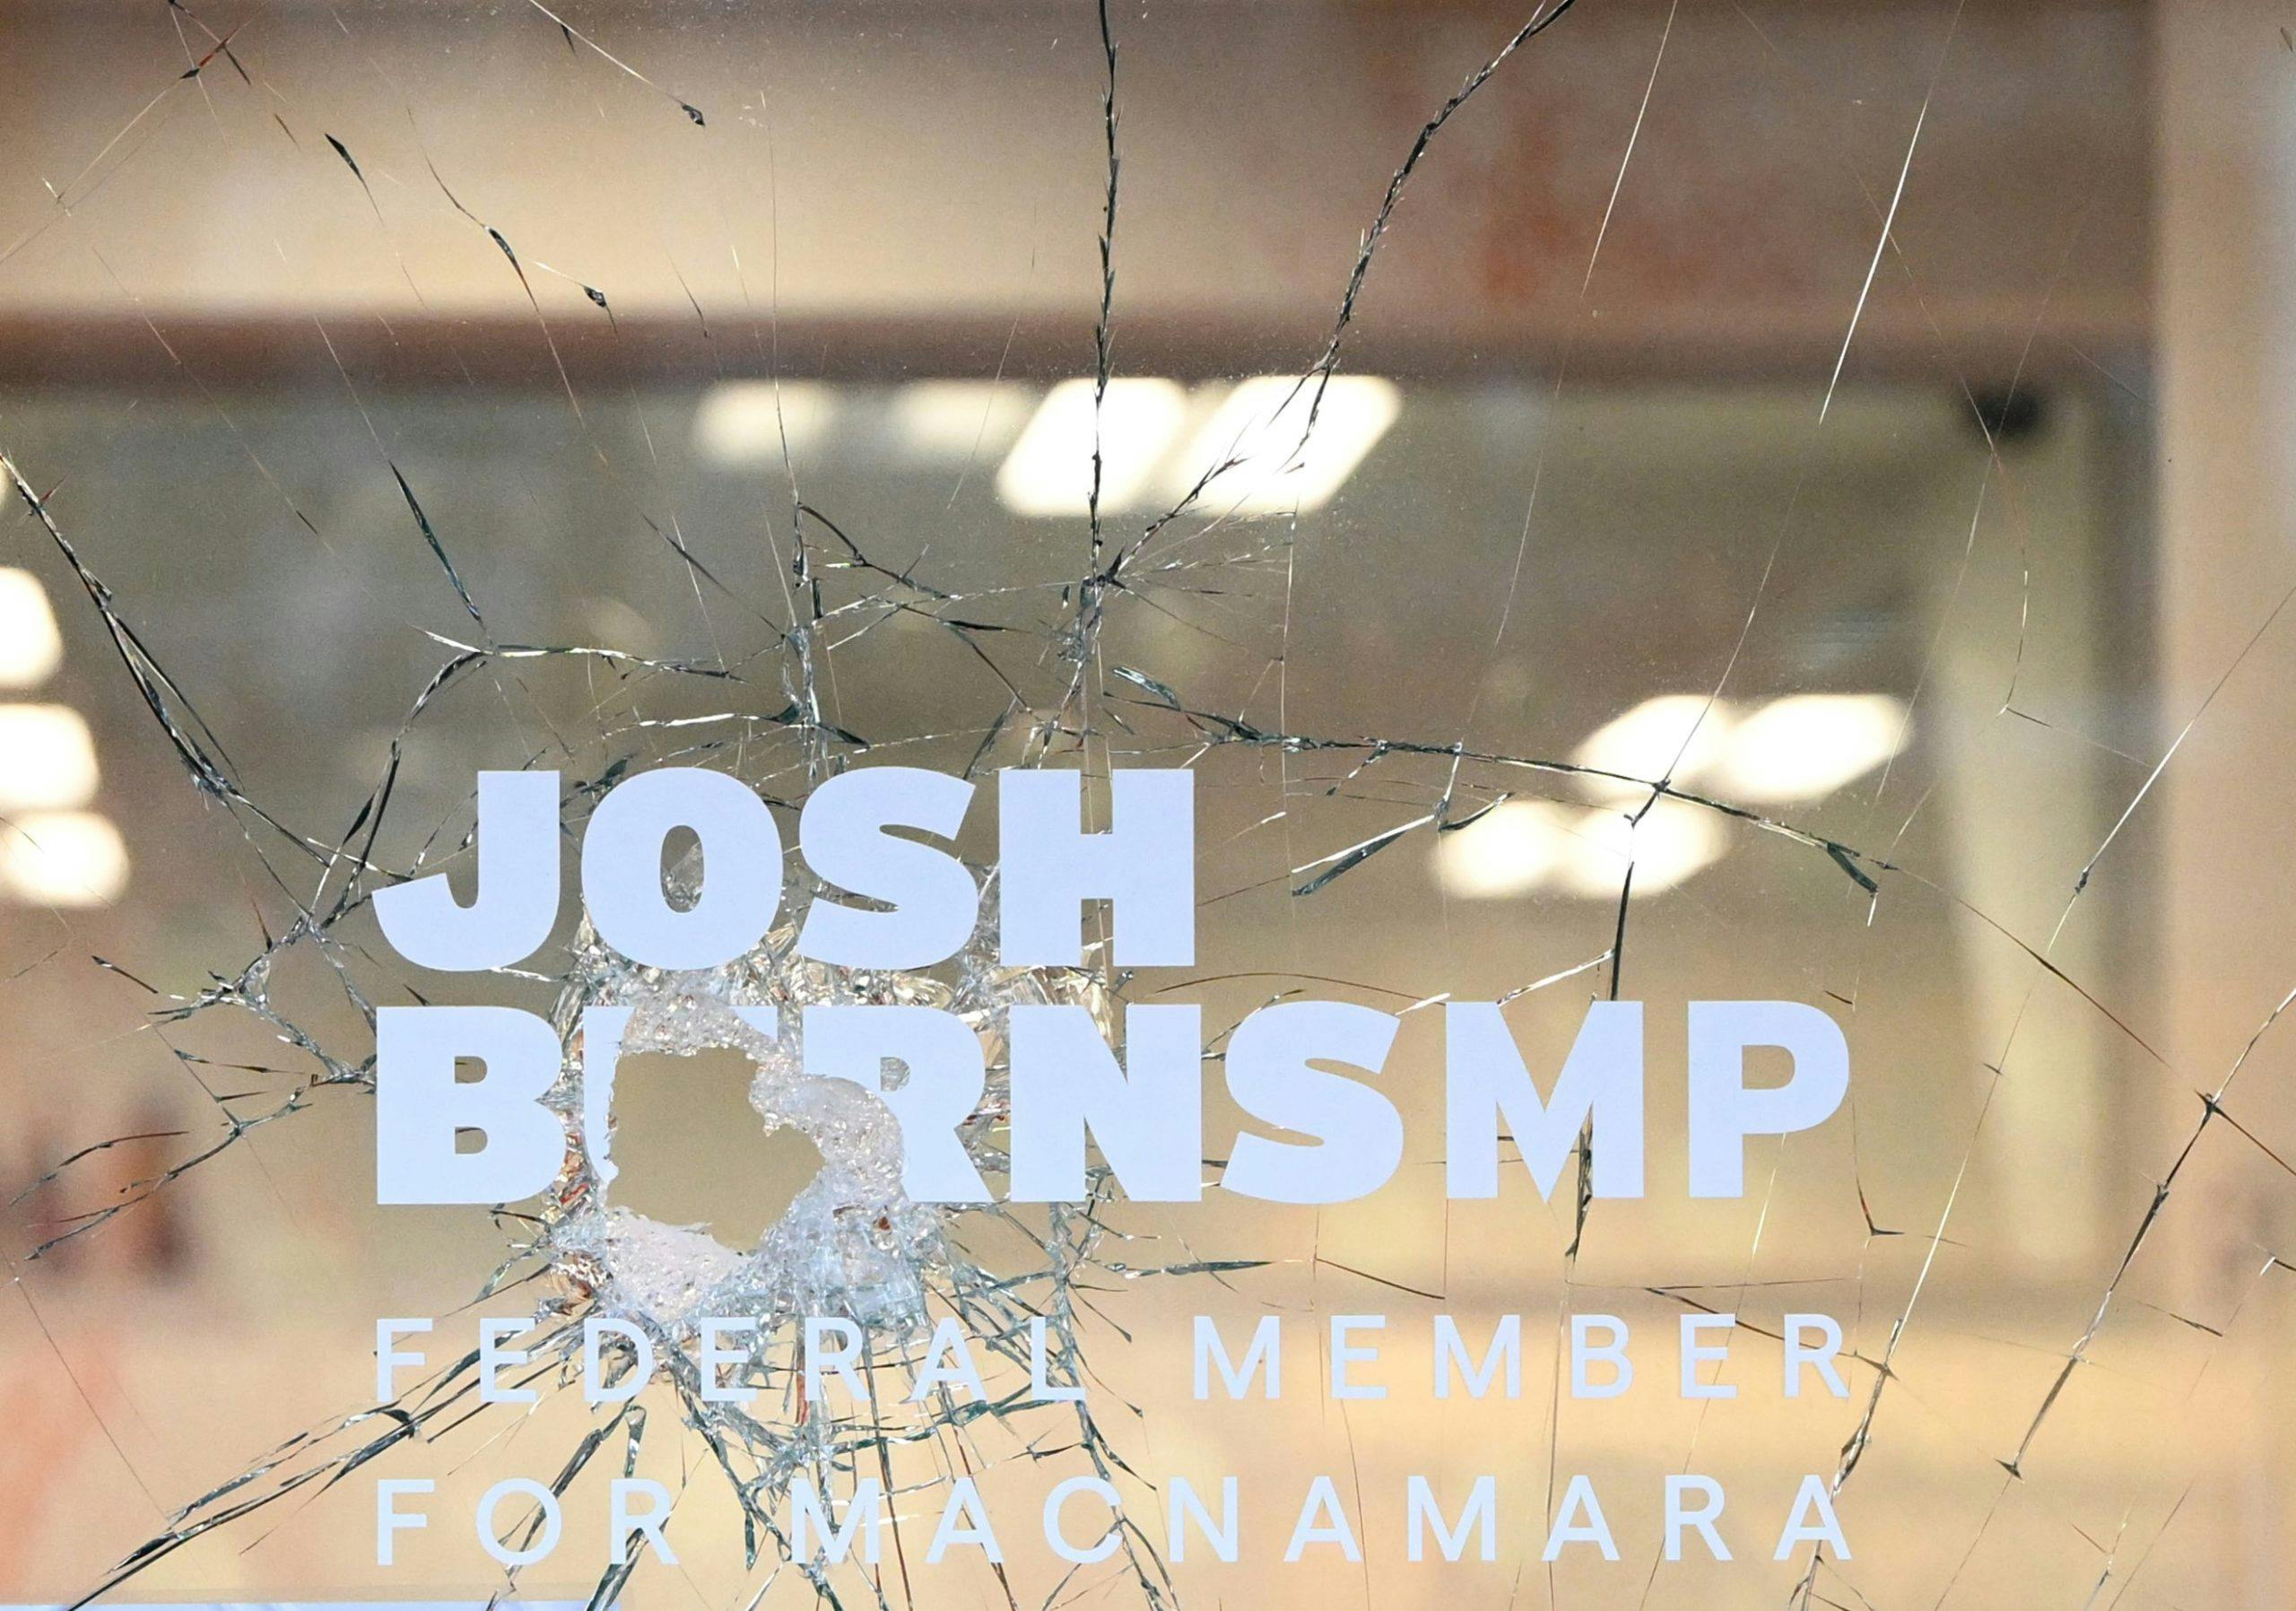 JOSH BURNS OFFICE broken window VANDALISM